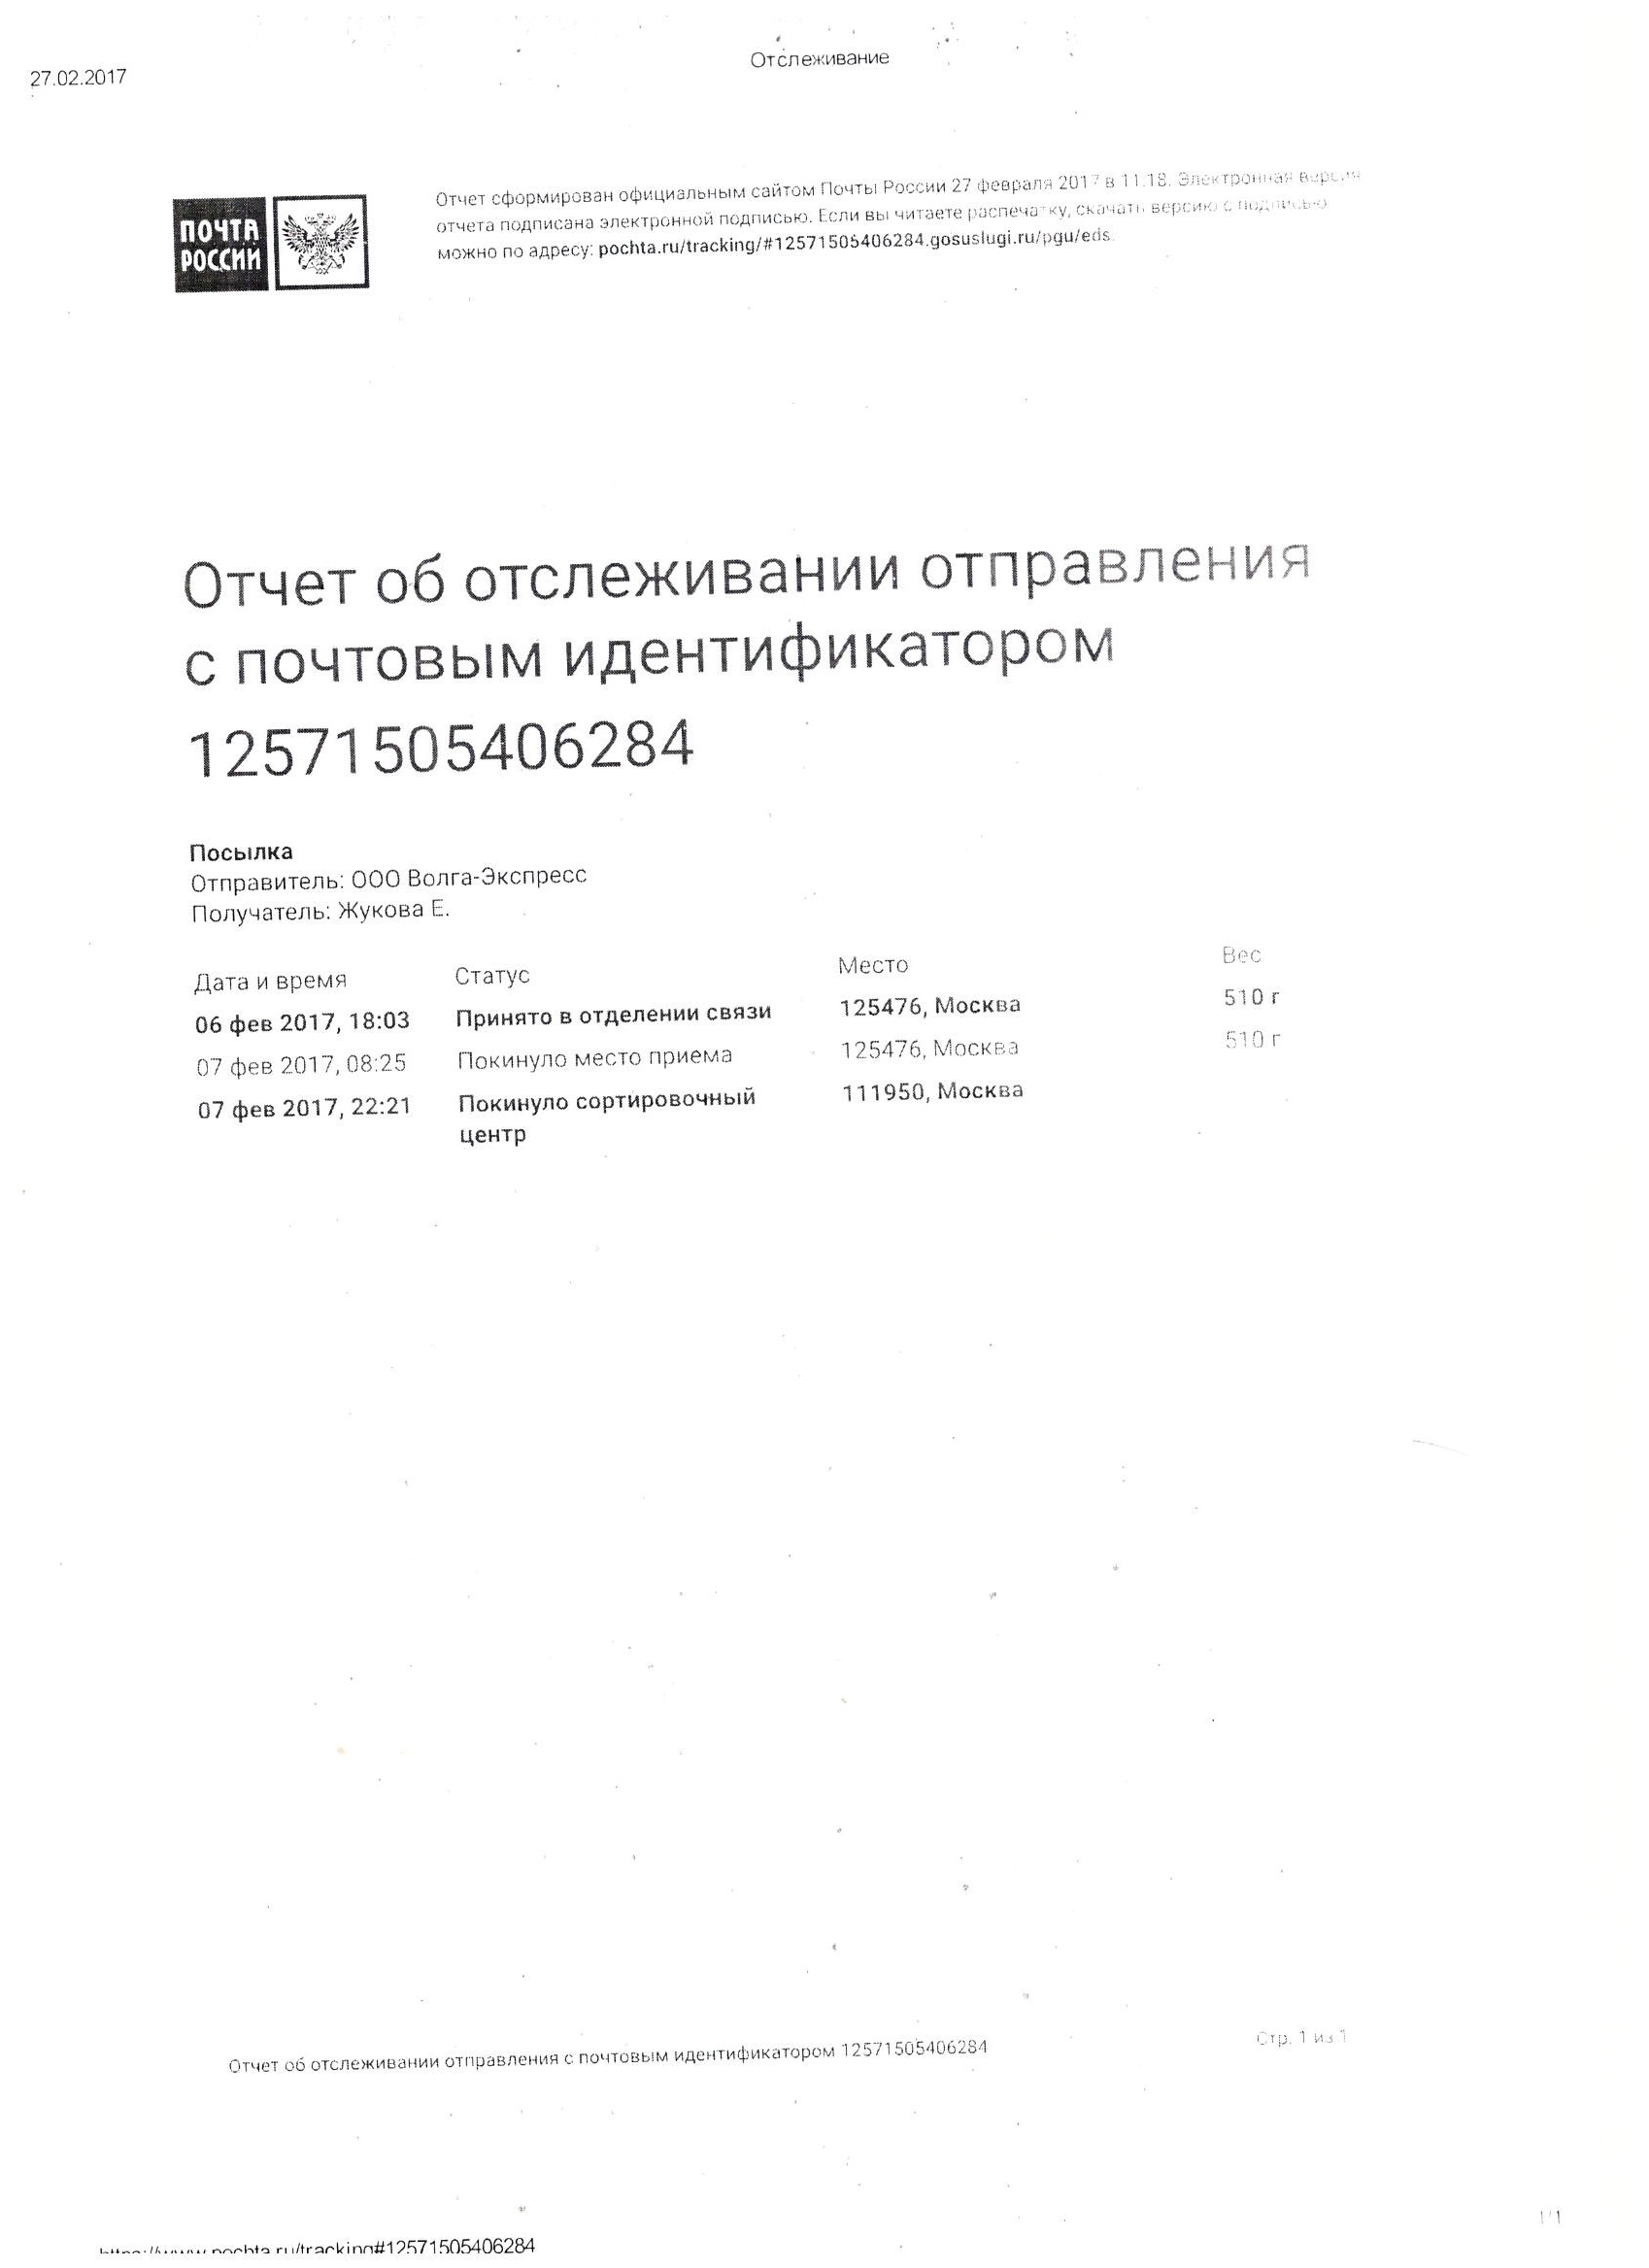 Инструкция почтового отделения о порядке вручения официальных писем